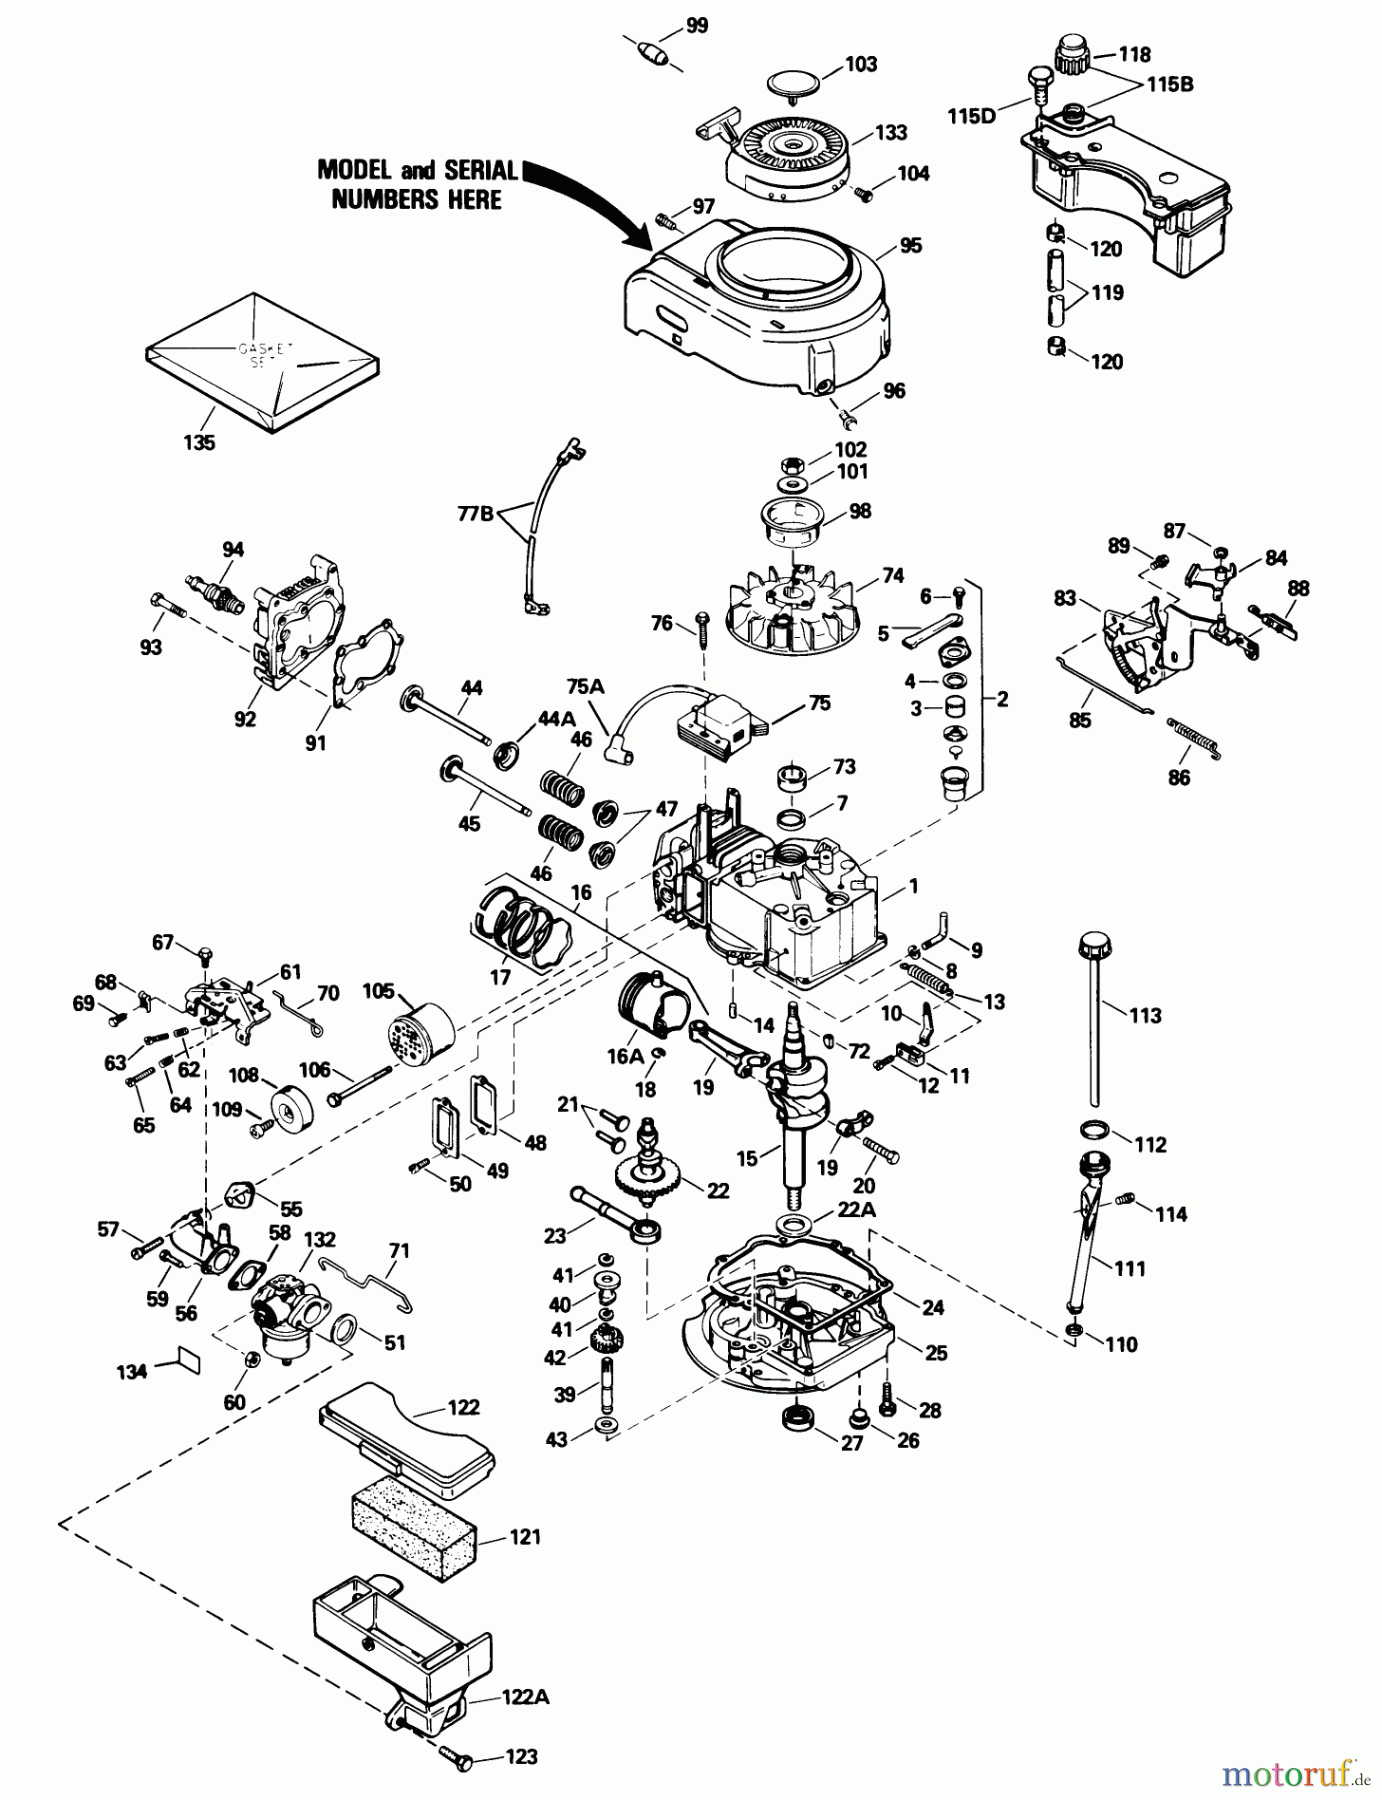  Toro Neu Mowers, Walk-Behind Seite 1 20692 - Toro Lawnmower, 1990 (0000001-0999999) ENGINE MODEL NO. TVS100-44015B